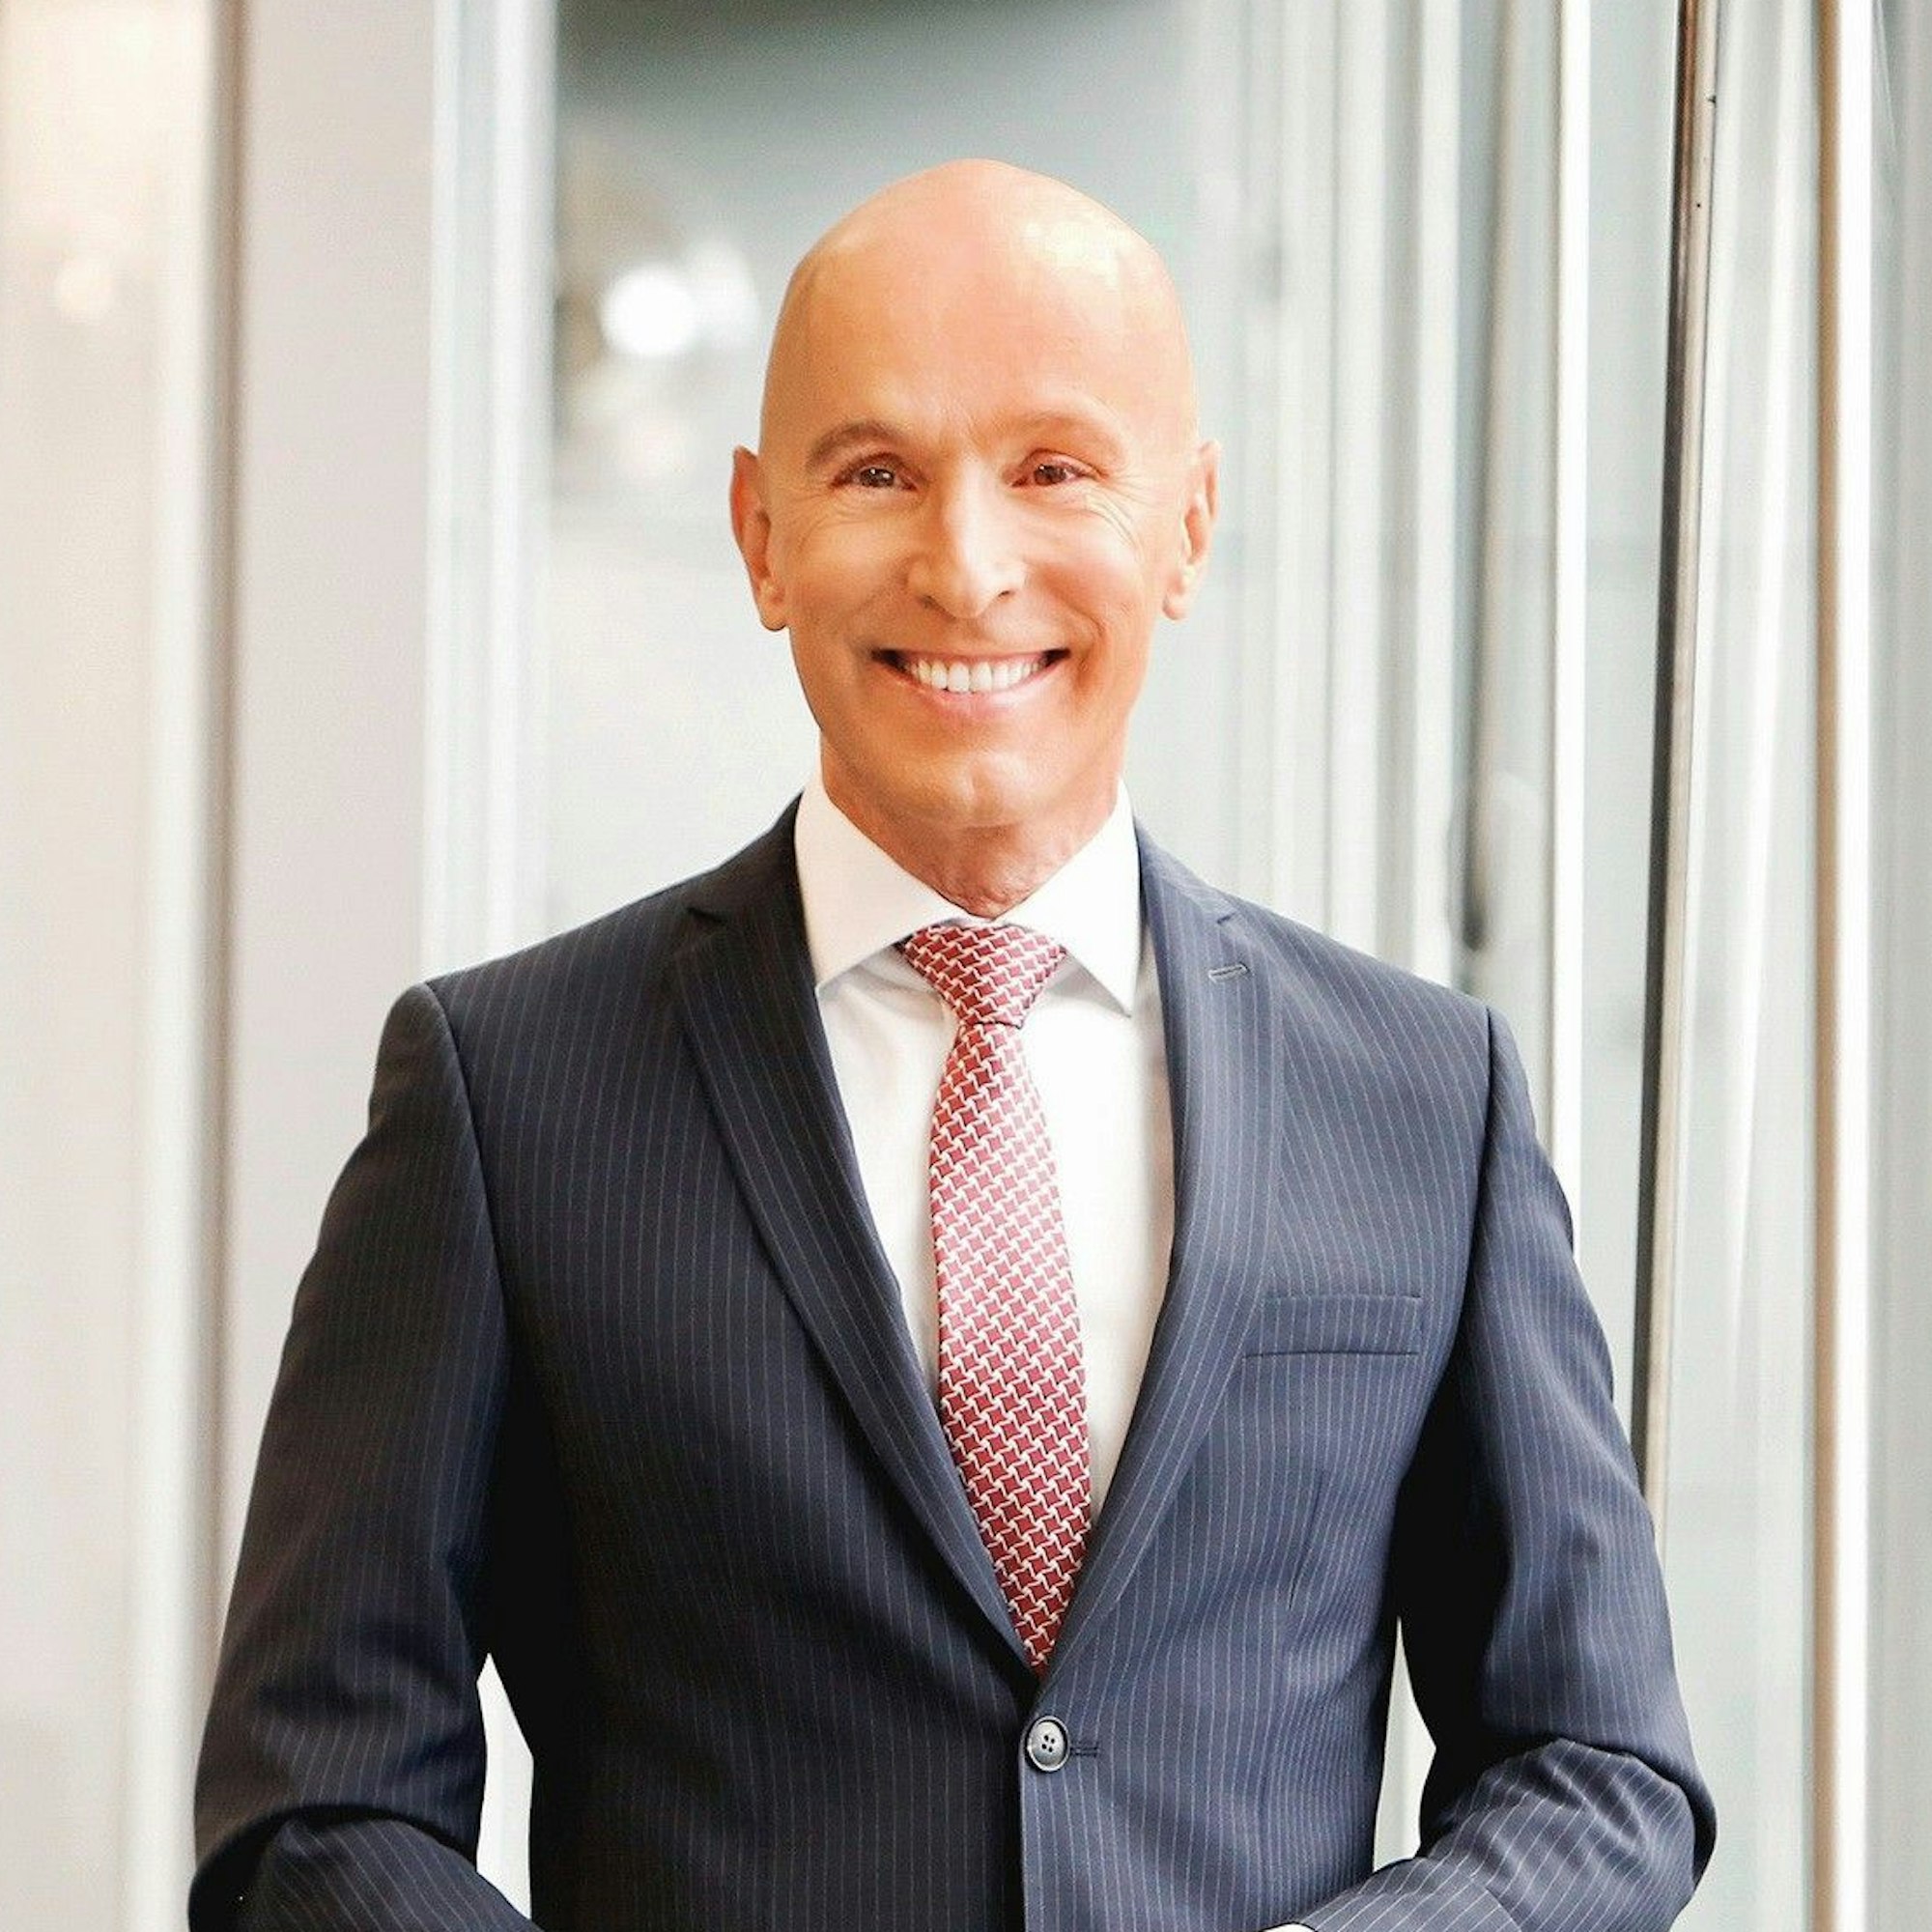 Ein Porträtfoto des RTL-Adelsexperten Michael Begasse. Er lächelt in die Kamera und trägt einen schwaren Anzug mit Nadelstreifen.